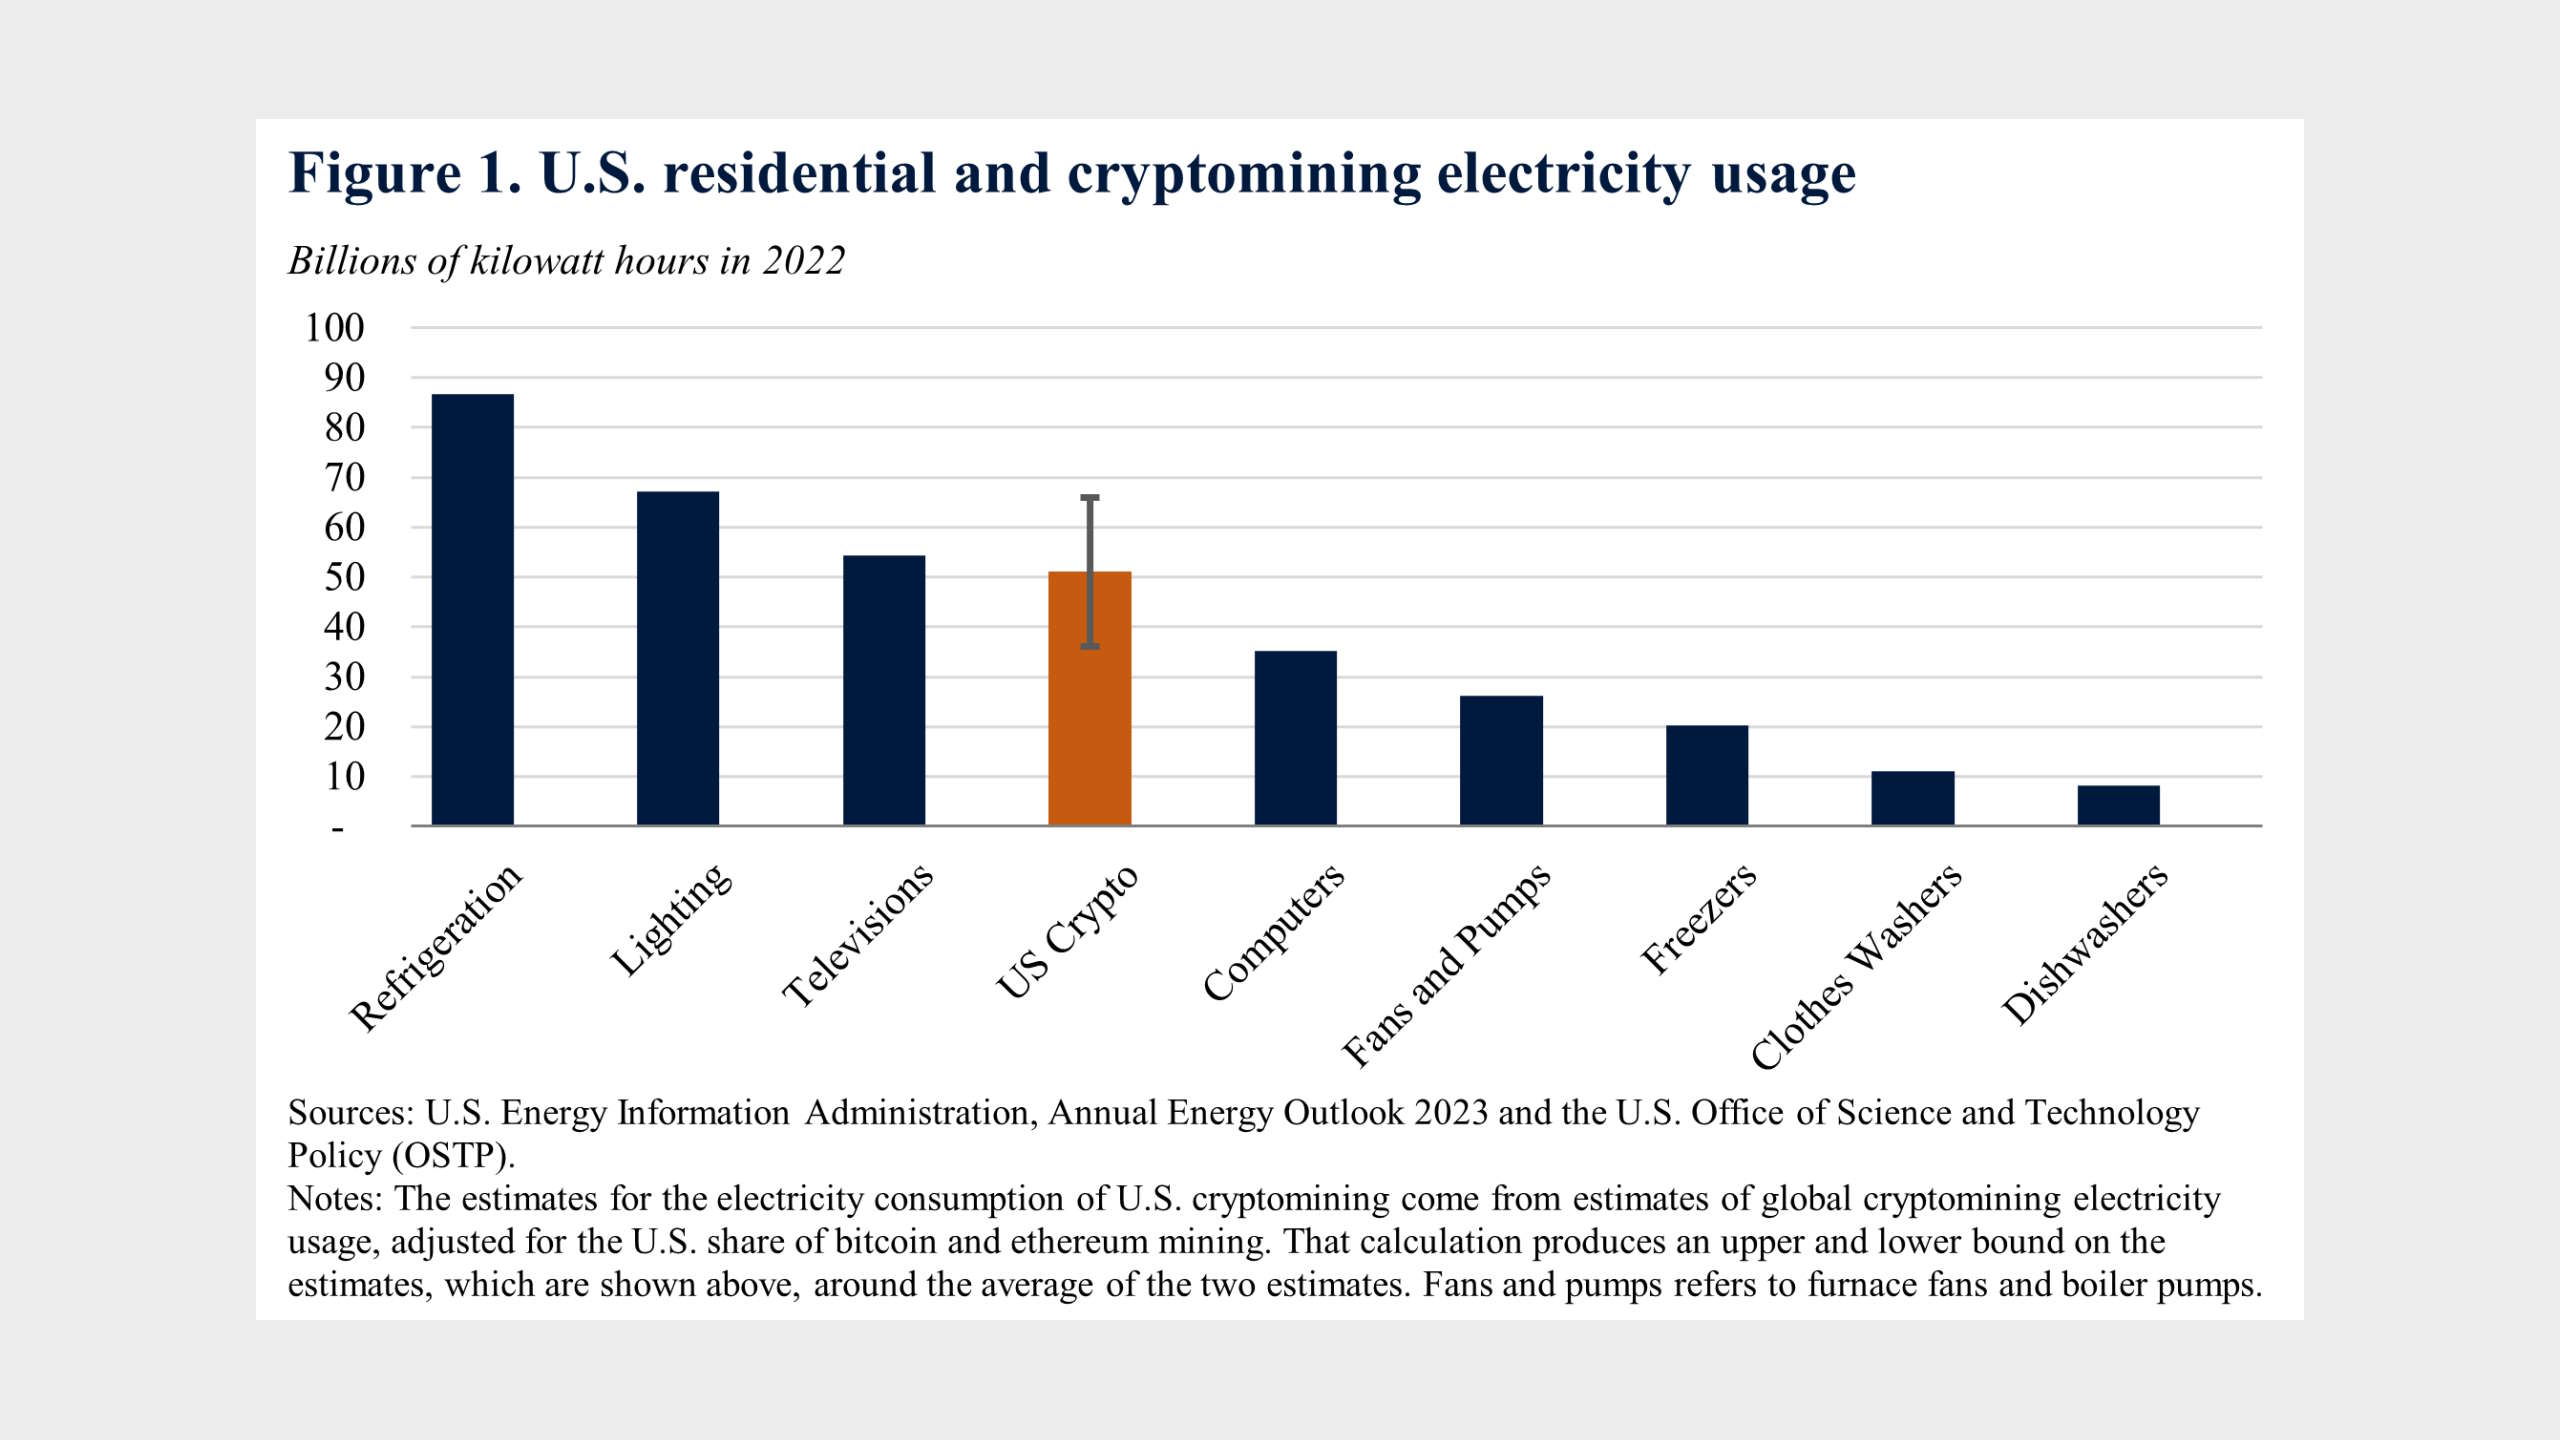 La consommation d'énergie estimée de l'extraction de crypto aux États-Unis par rapport à d'autres utilisations d'énergie